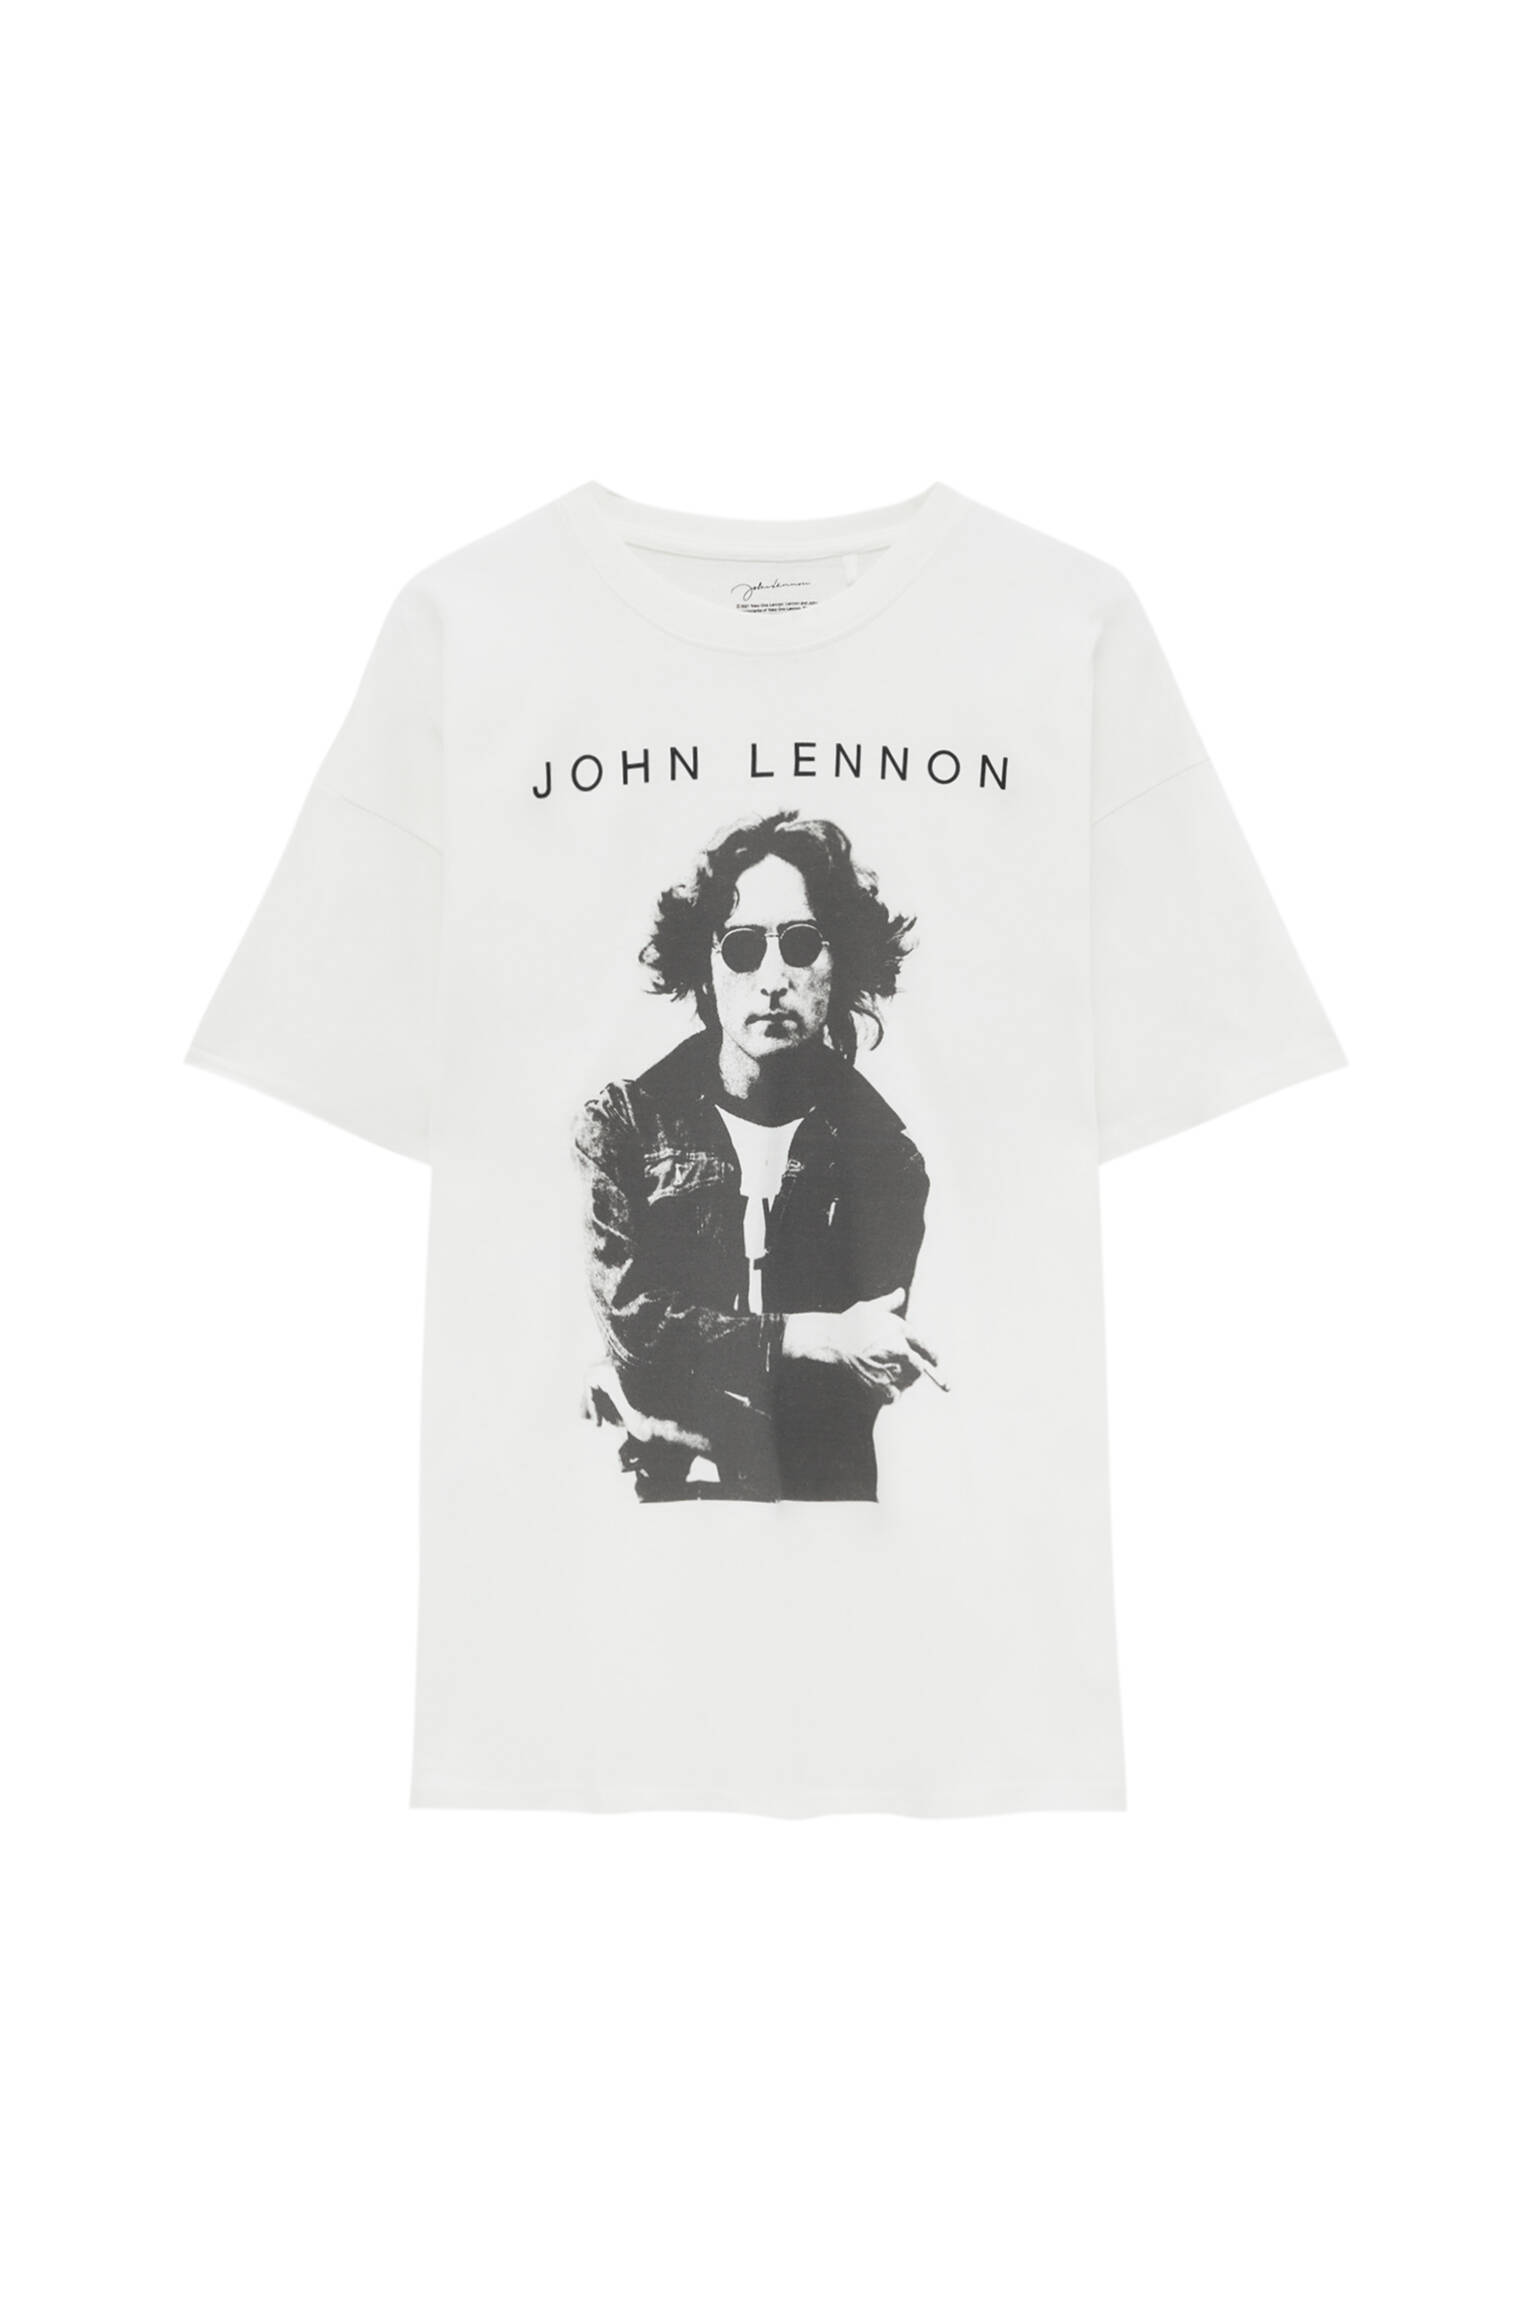 Pull&bear Homme T-shirt Blanc 100 % Coton à Manches Courtes Et Col Rond, Avec Photographie De John Lennon. Blanc CassÉ S